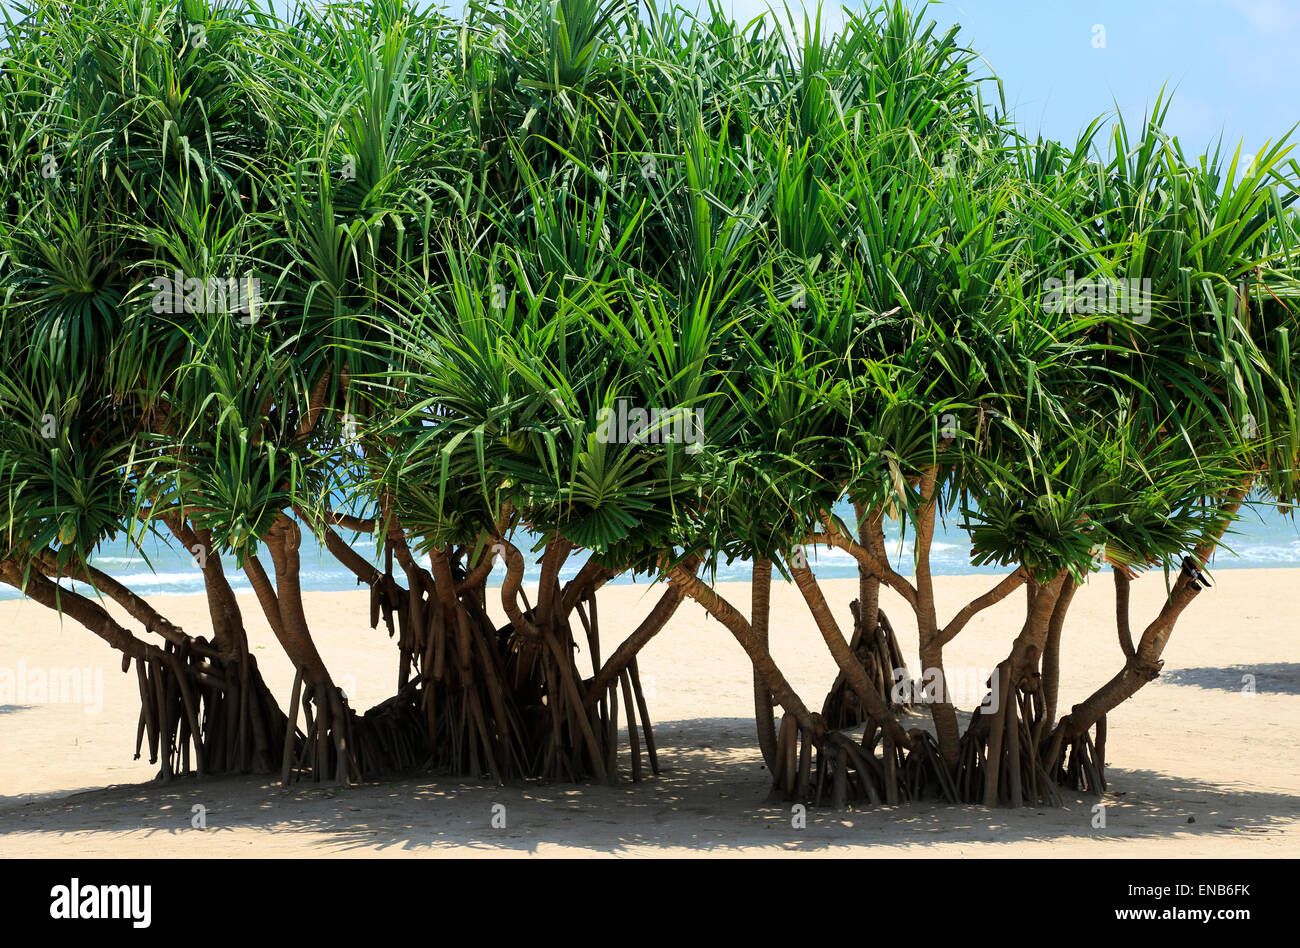 Palme Pandanus alberi che crescono sulla spiaggia sabbiosa, Nilaveli, Trincomalee, Sri Lanka, Asia Foto Stock